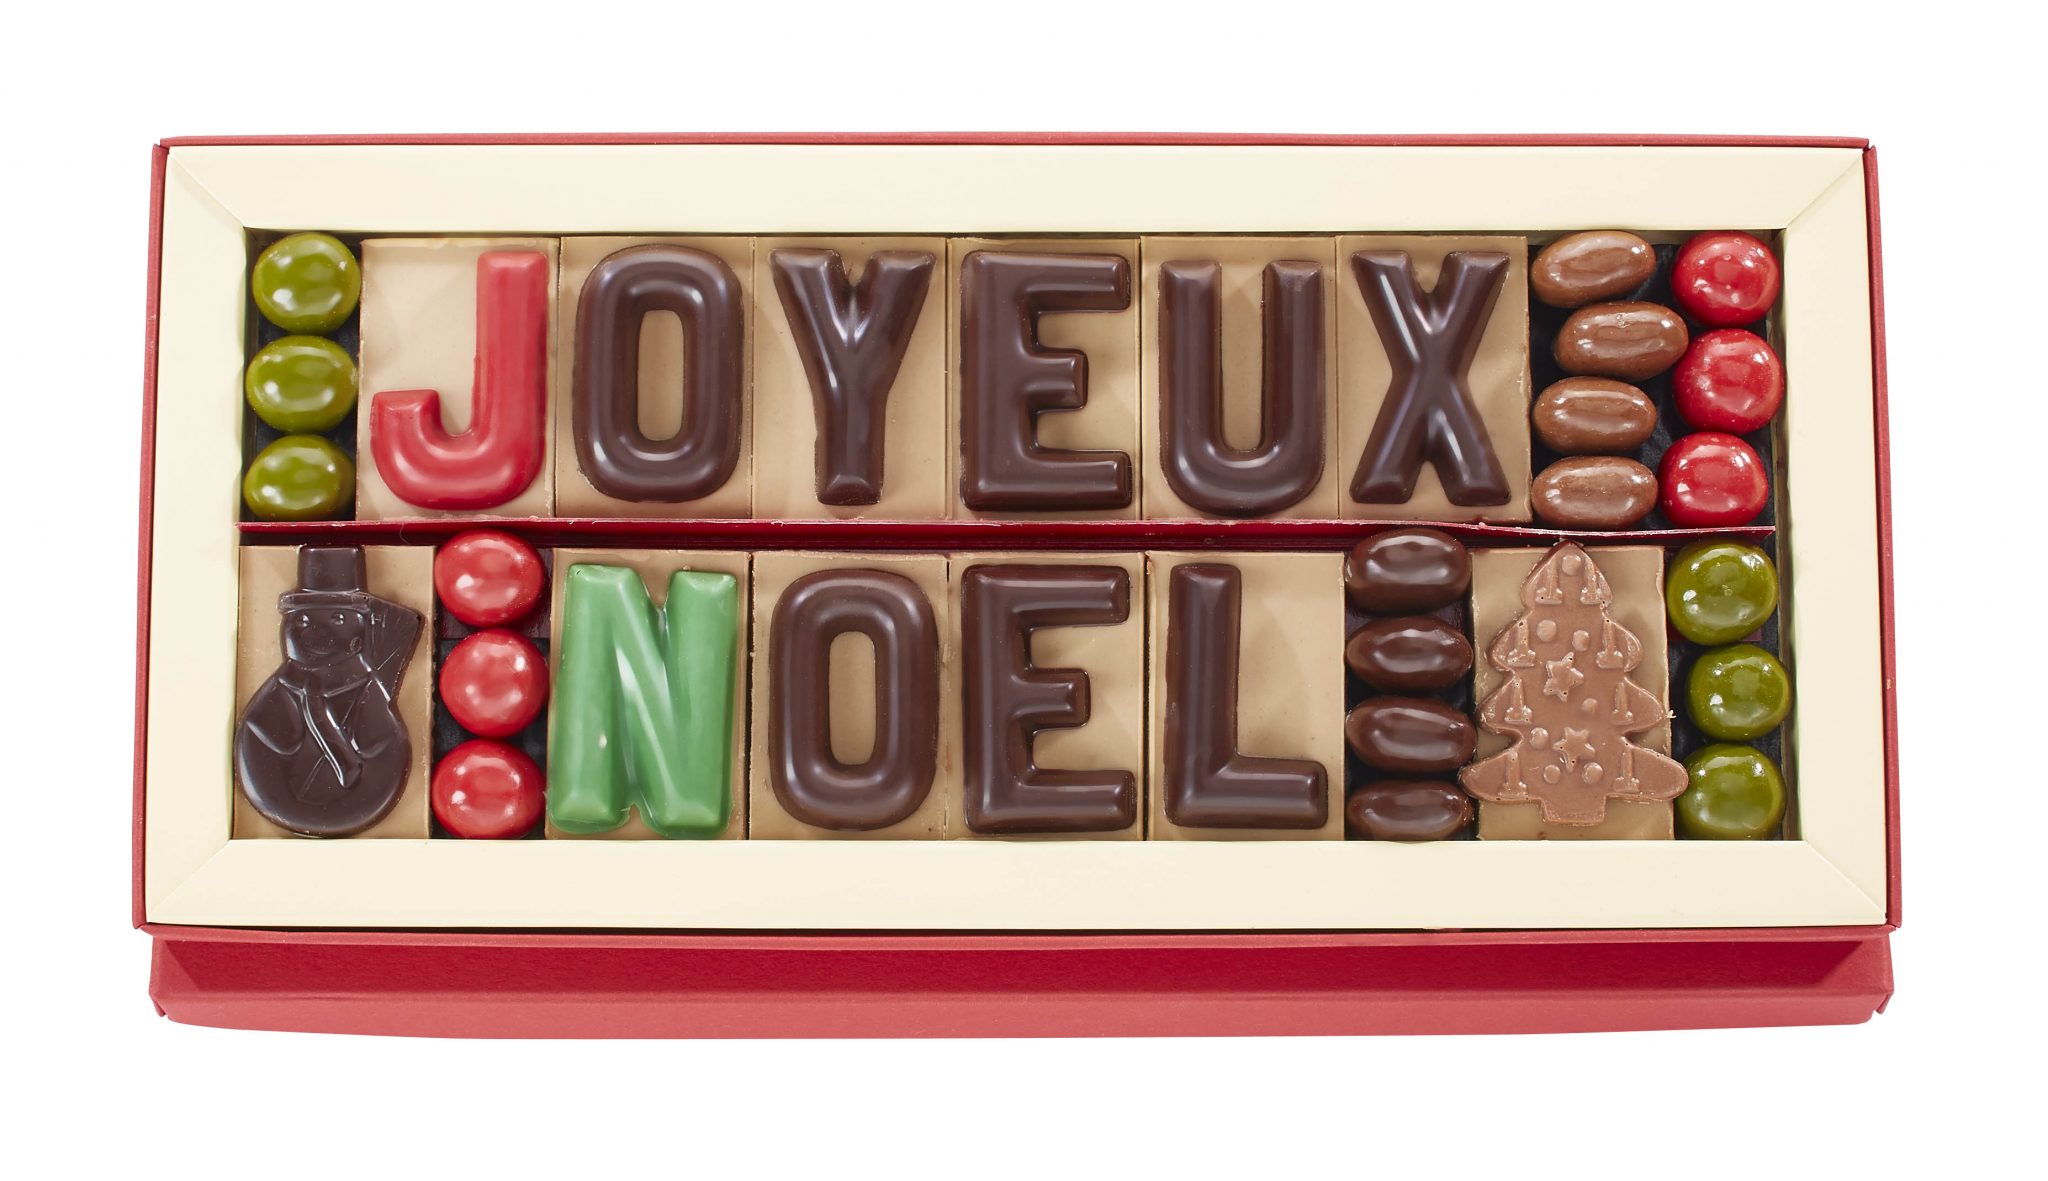 Boite Cadeau Grenelle - Coffret chocolat et champagne - La Maison du  Chocolat